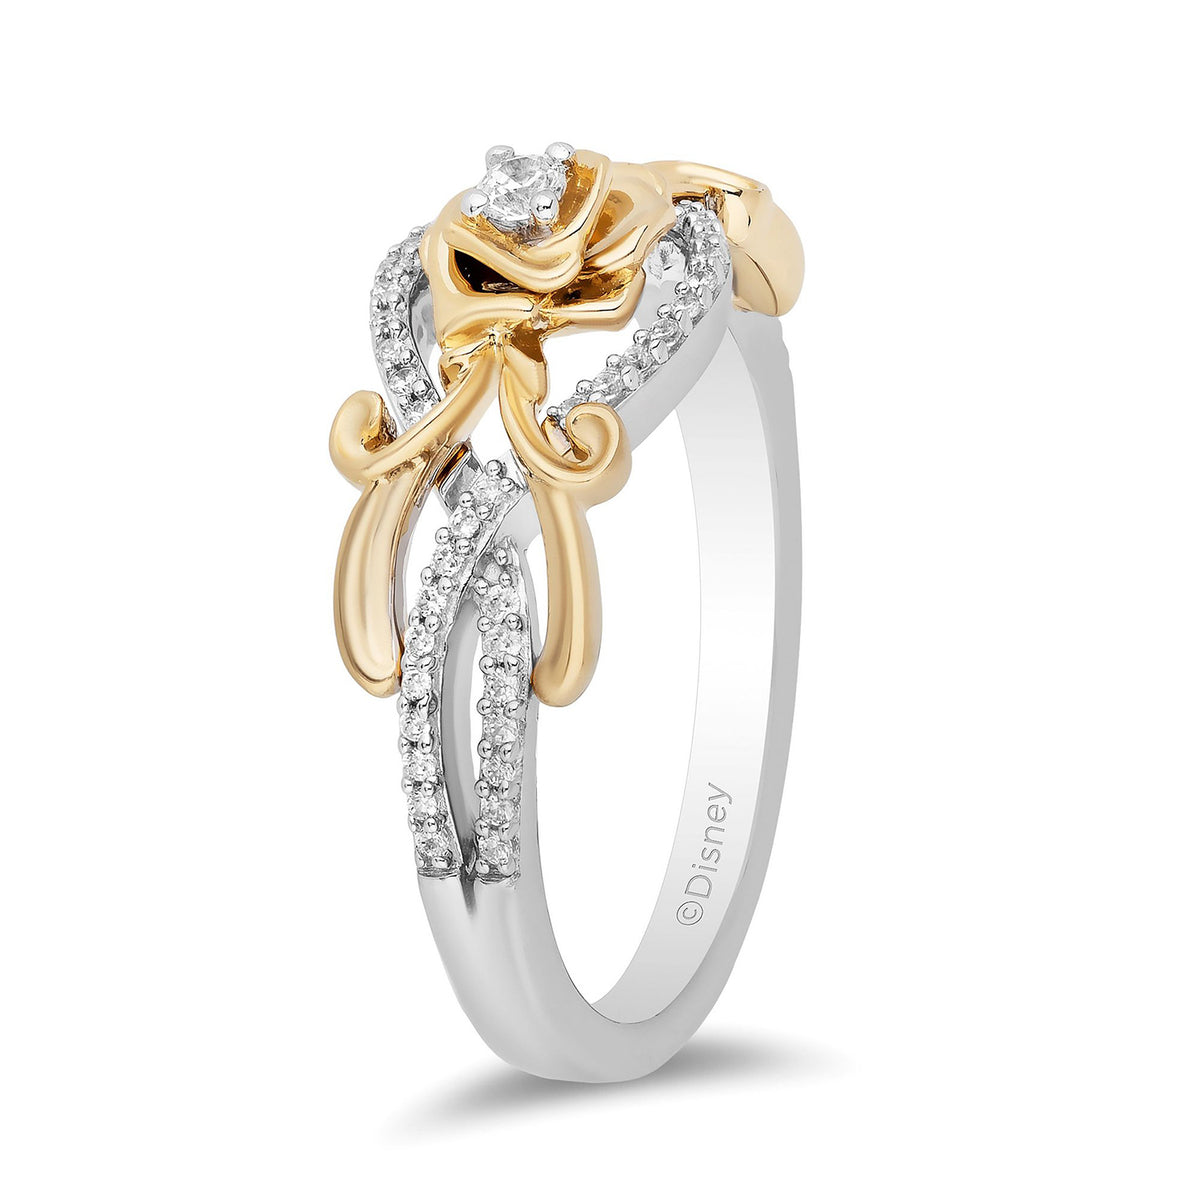 Disney Belle Inspired Diamond Rose Ring 10K Yellow Gold 1/5 CTTW